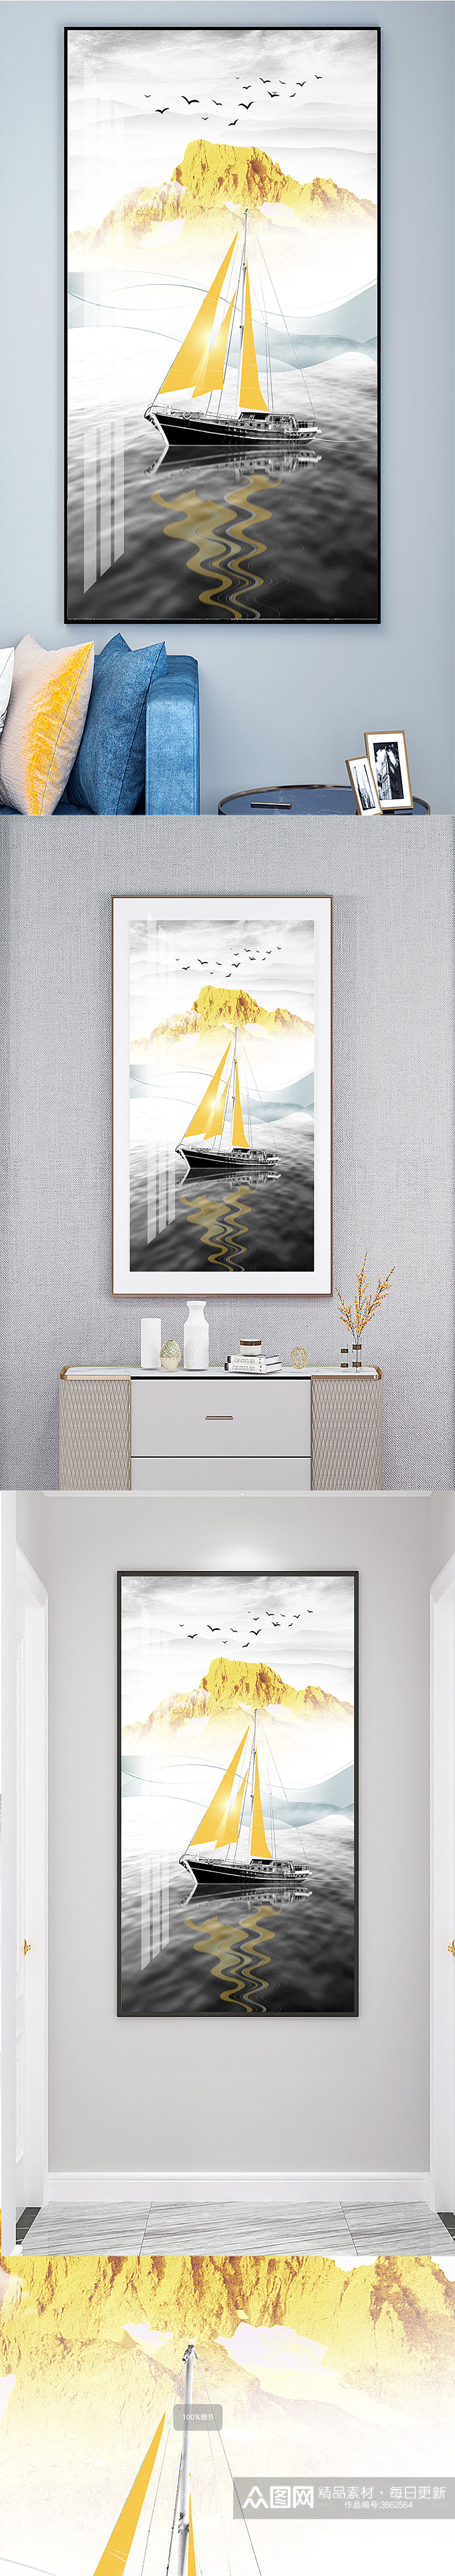 金色帆船一帆风顺装饰画素材